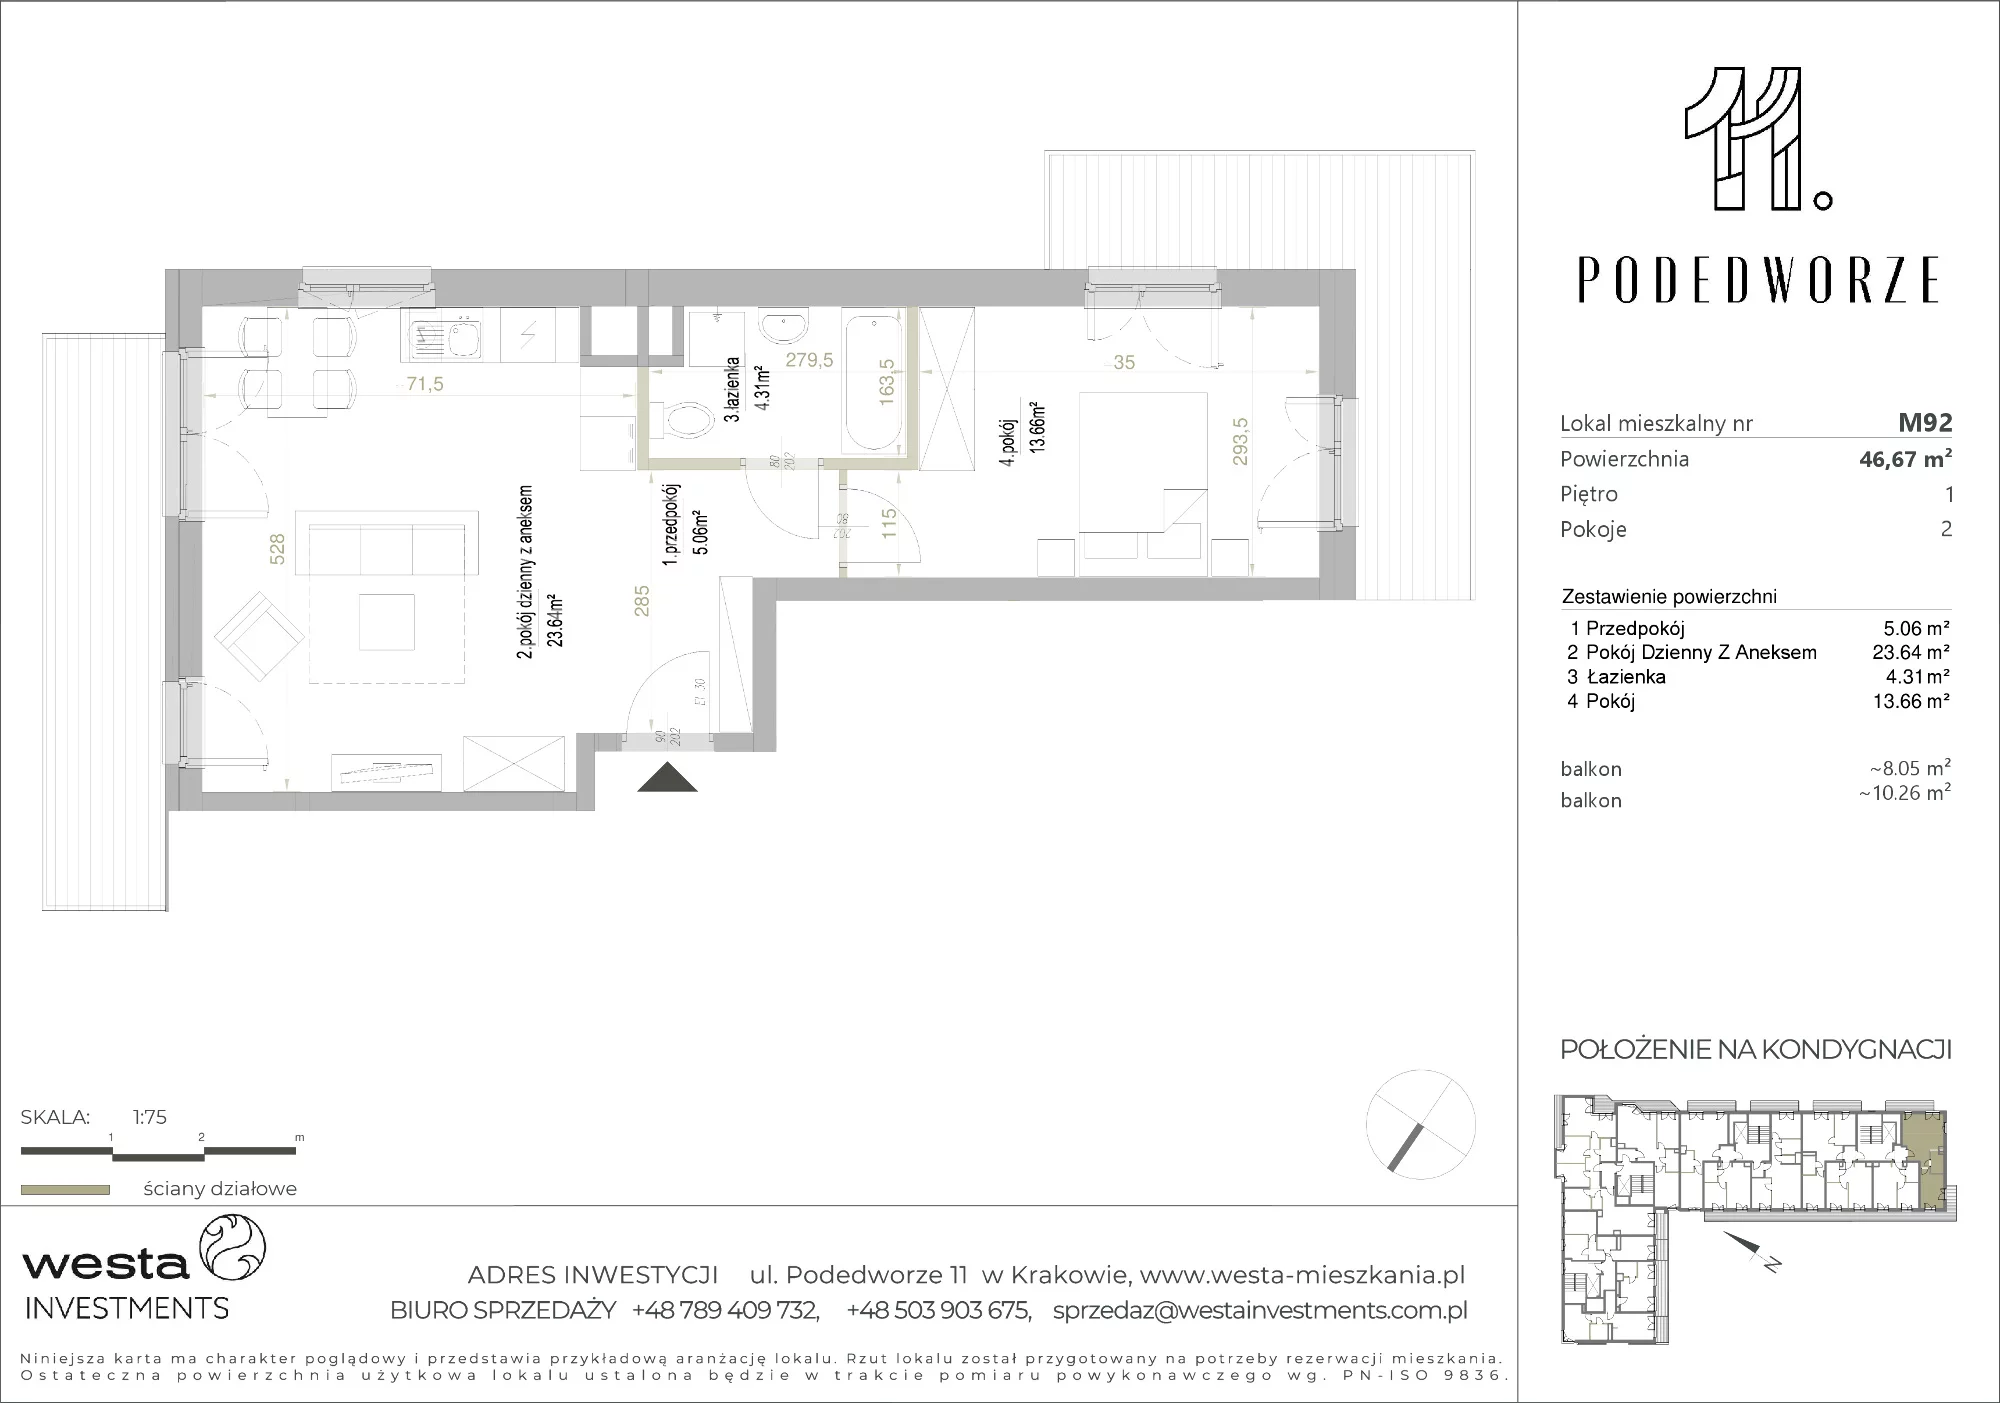 Mieszkanie 46,67 m², piętro 1, oferta nr 92, Podedworze 11, Kraków, Podgórze Duchackie, Piaski Wielkie, ul. Podedworze 11